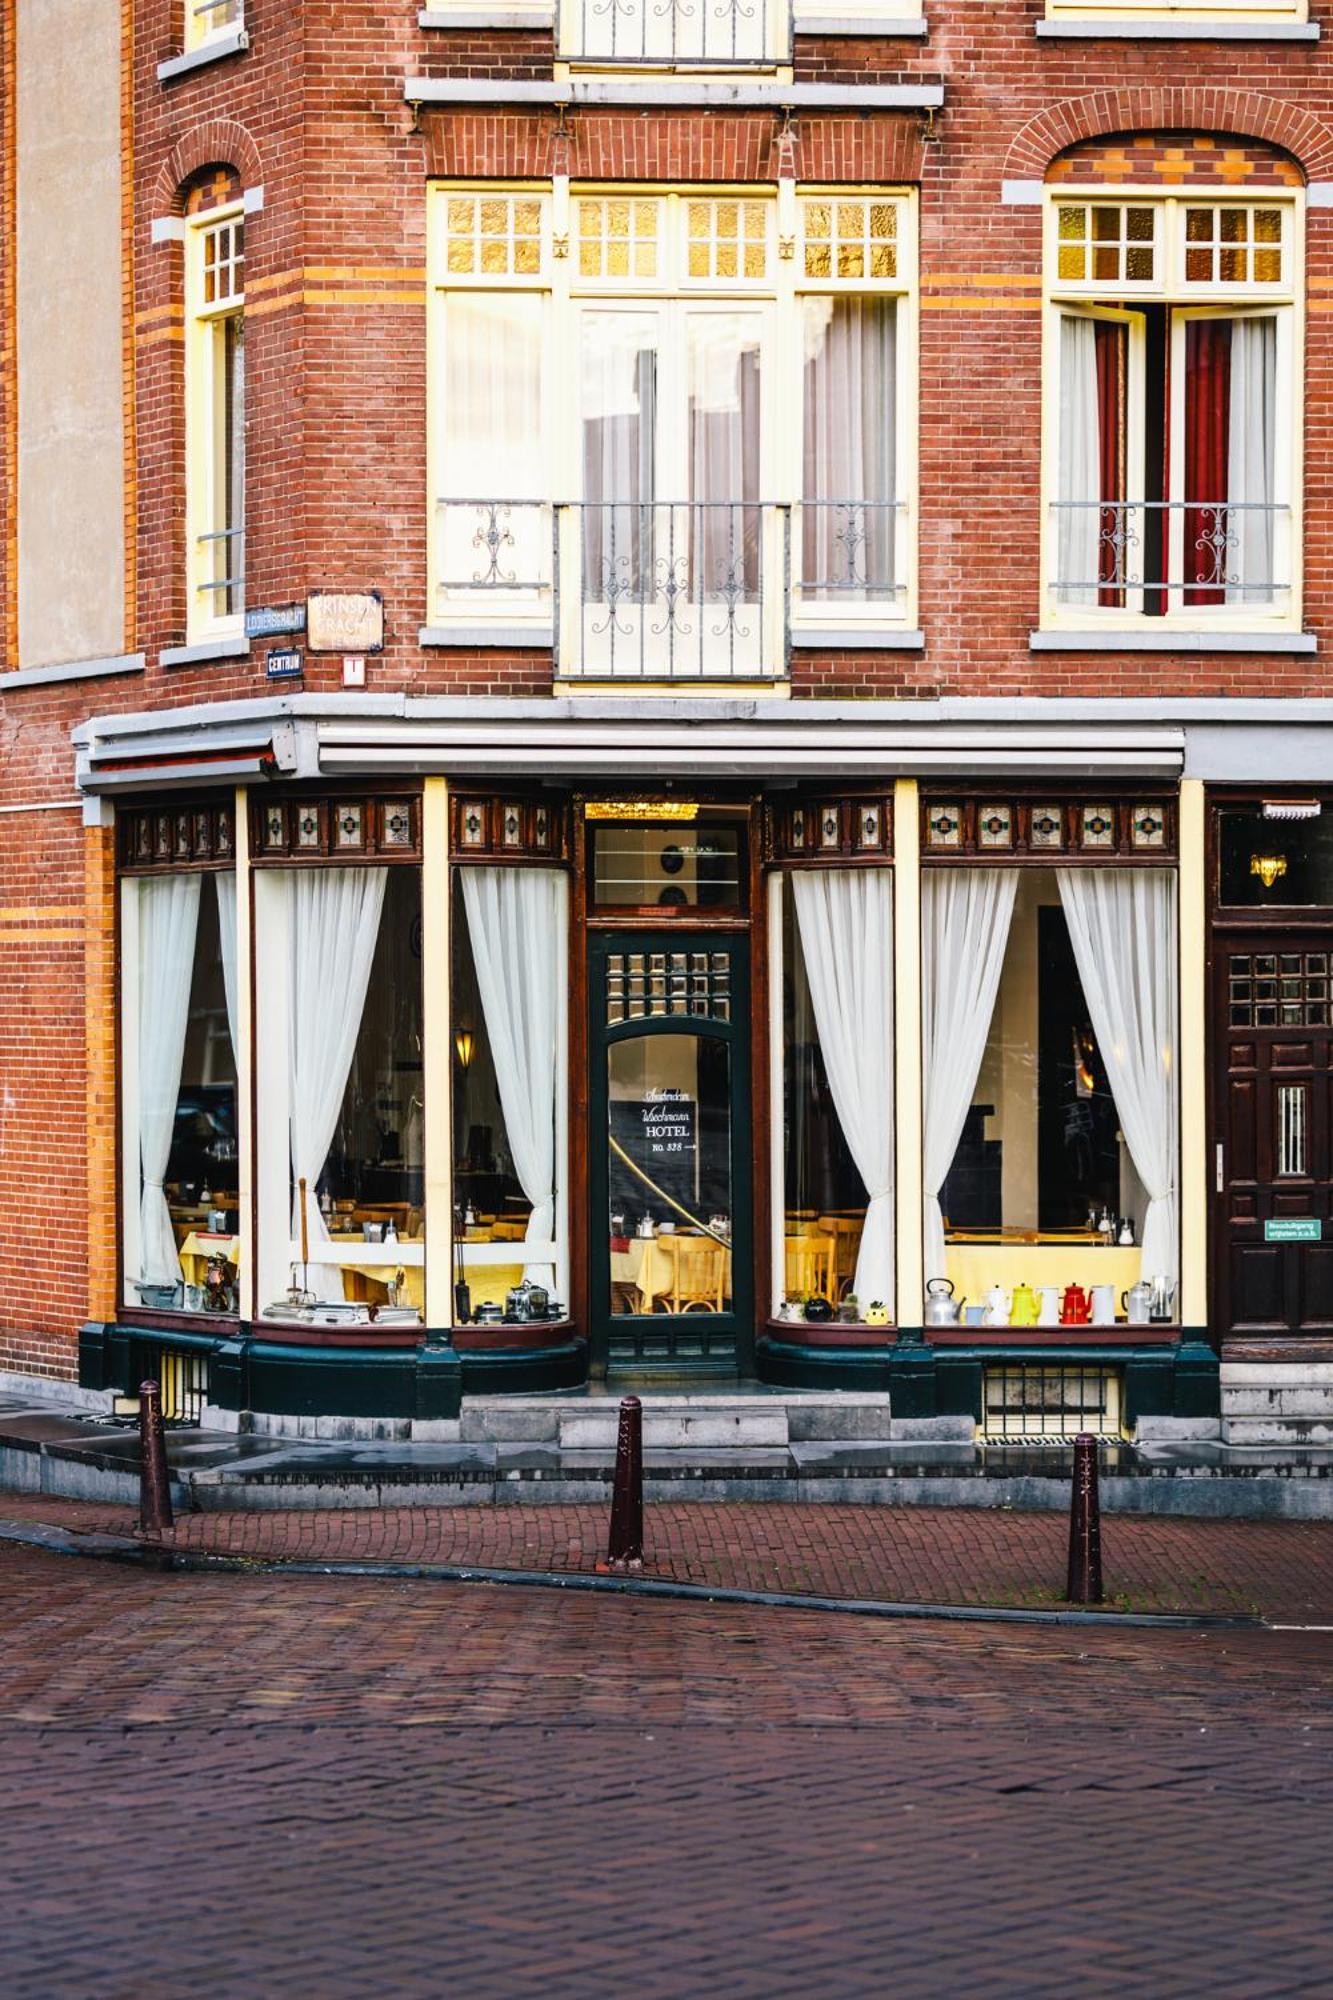 Amsterdam Wiechmann Hotel Exteriér fotografie